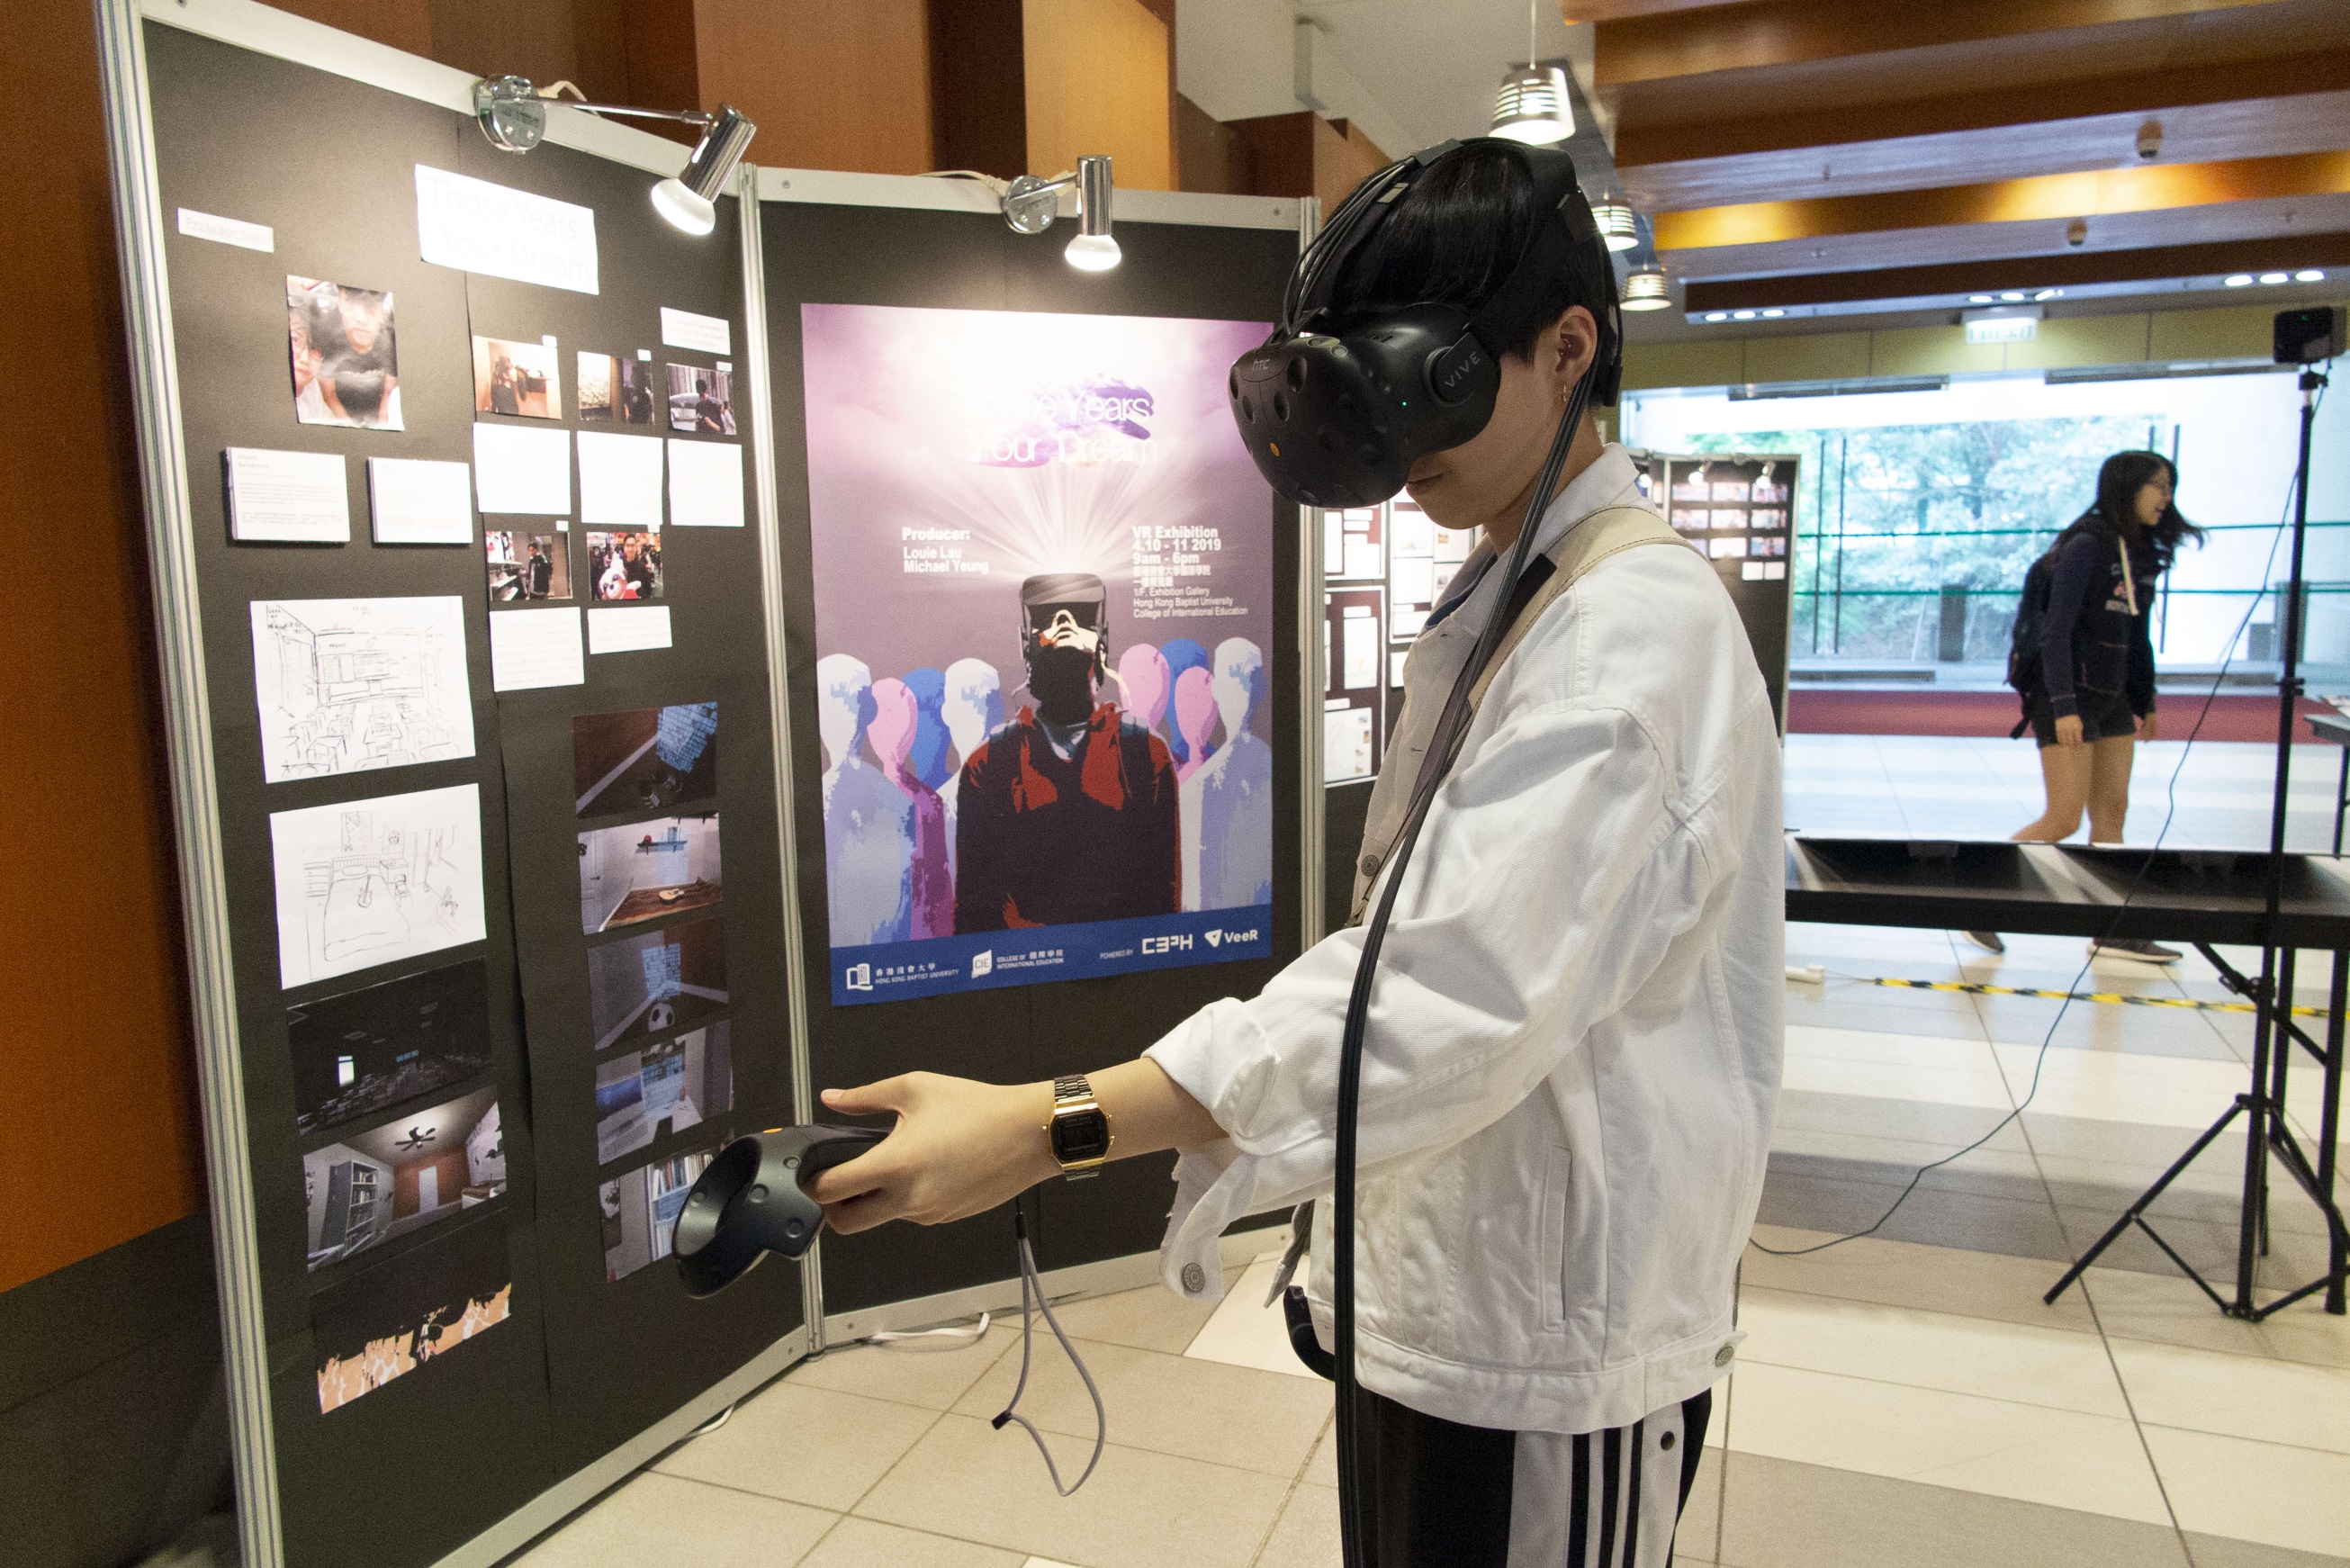 嶄新的虛擬實境（VR）作品「Those Years Your Dream」希望鼓勵高中同學建立正確的人生價值觀，及保持追尋夢想的勇氣。